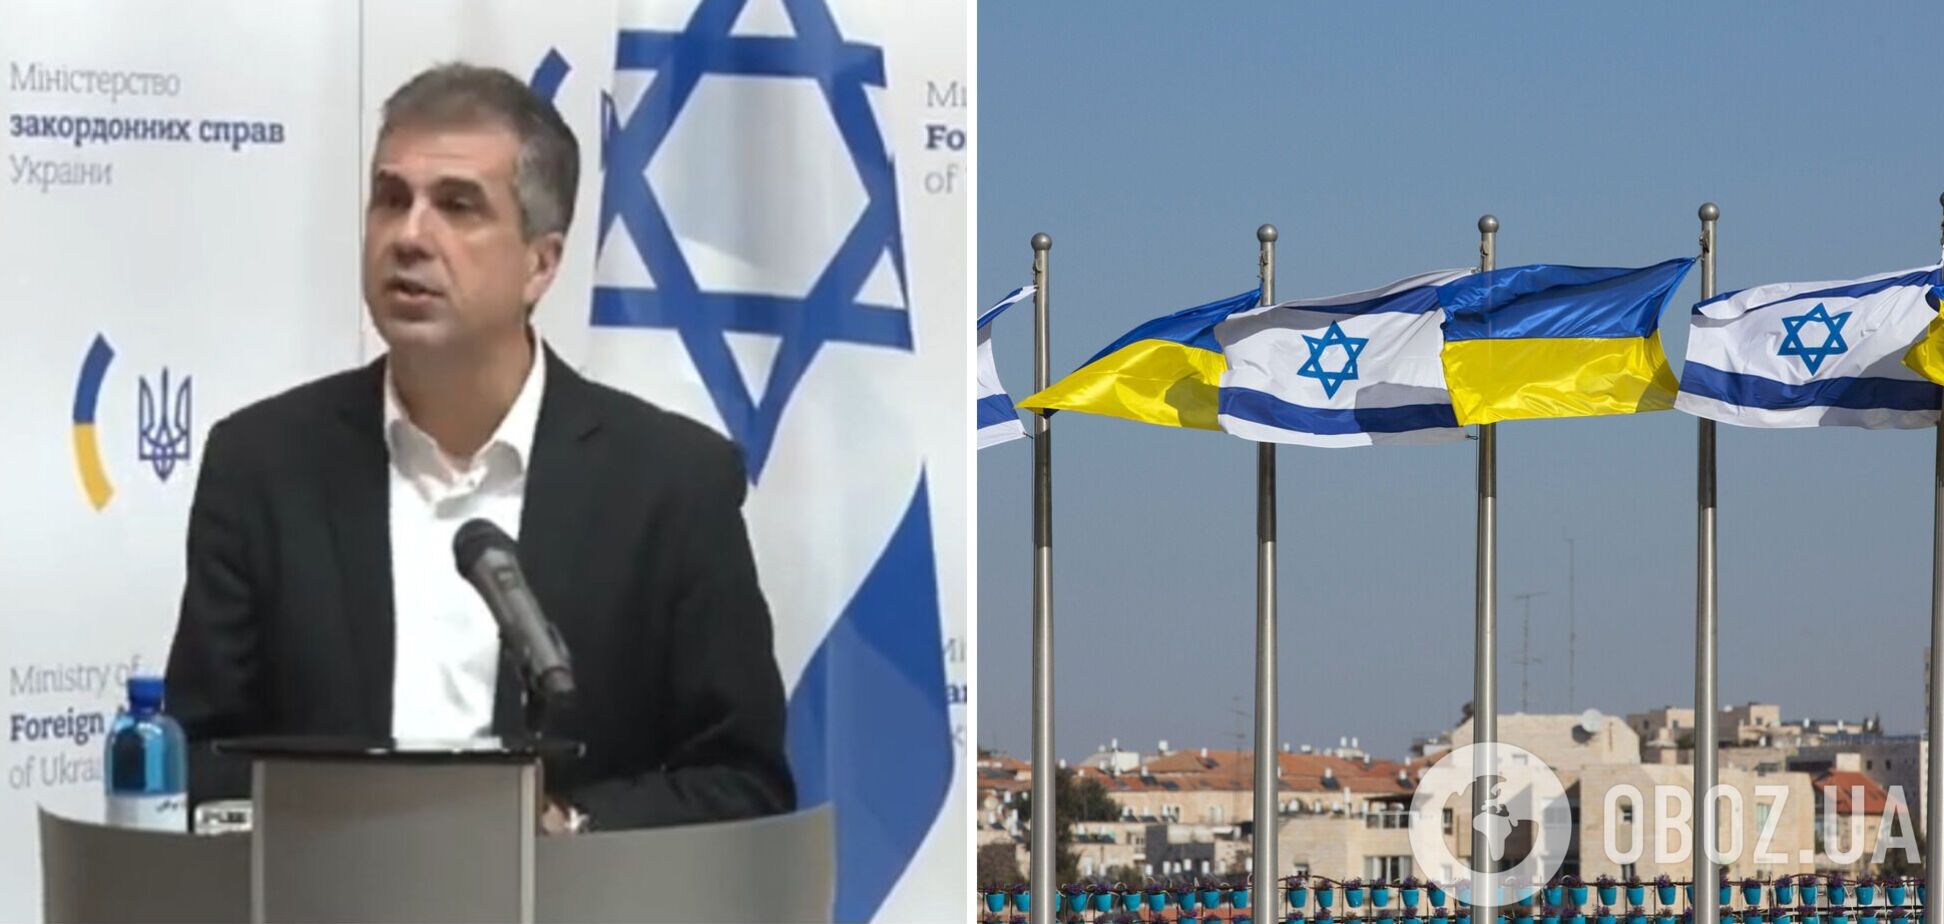 Ізраїль допоможе Україні з розбудовою медичної інфраструктури: деталі перемовин Кулеби і Коена